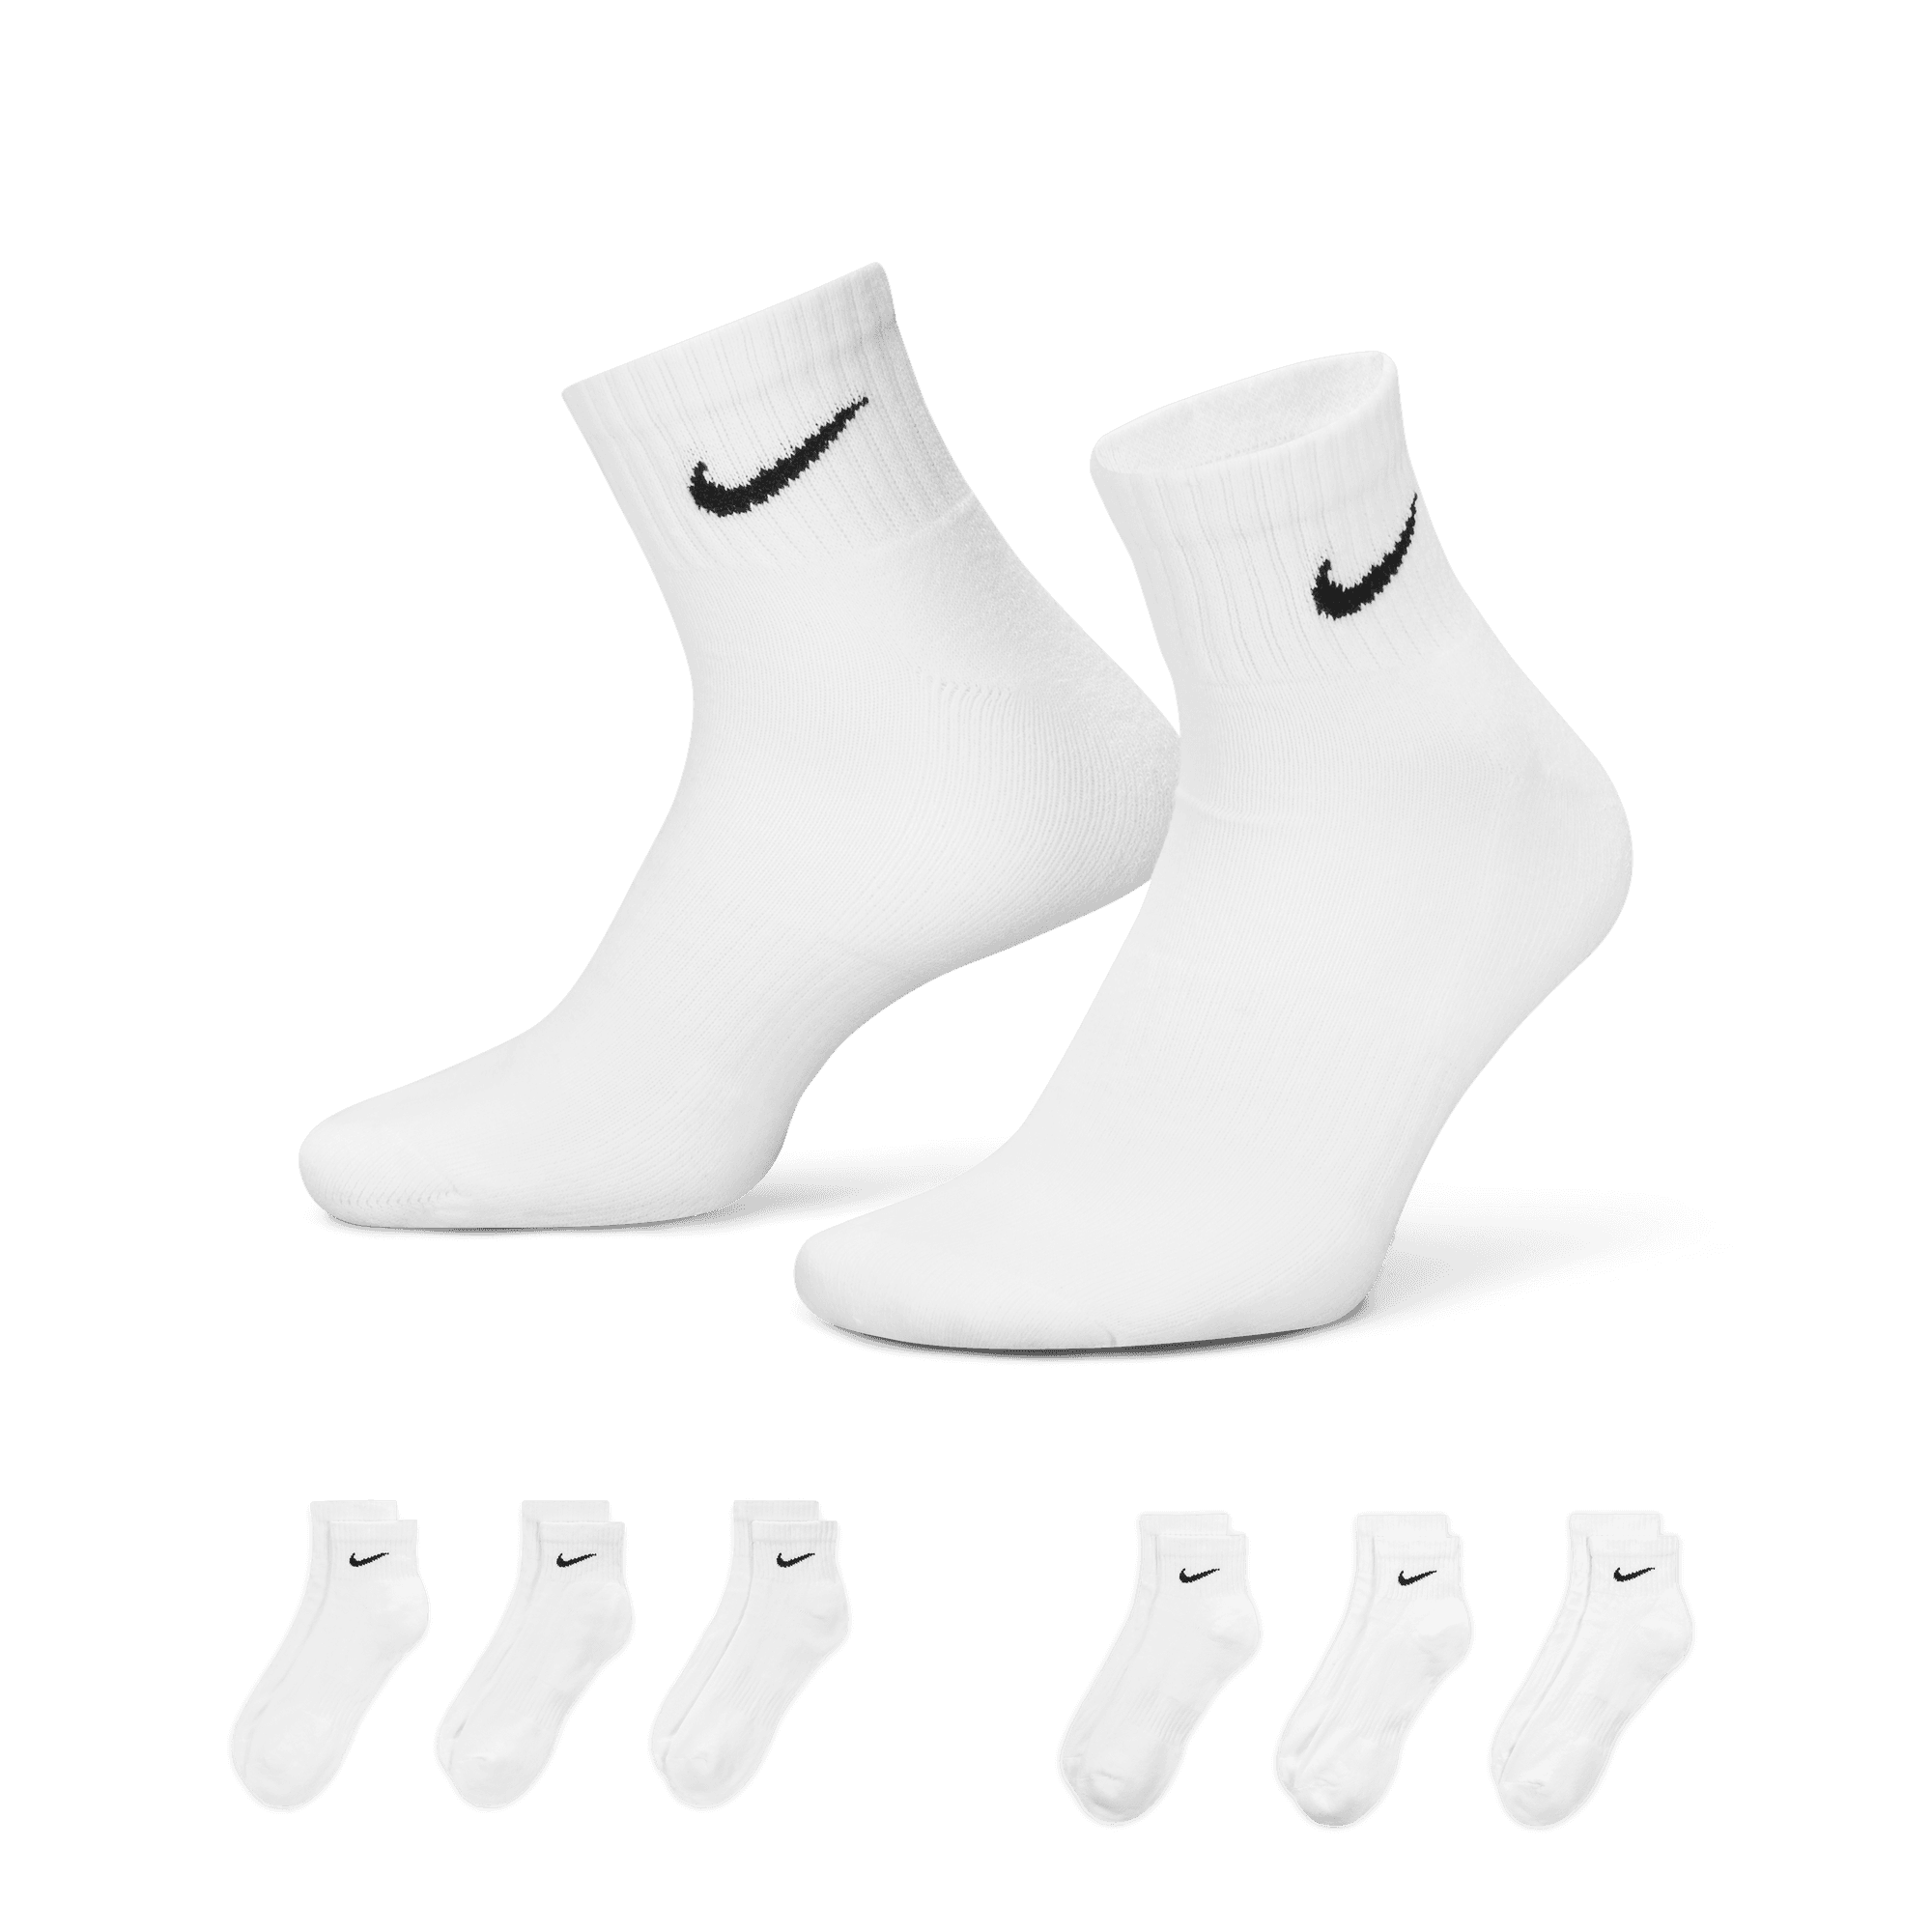 Nike 3-Pack Cushion Crew Sock  Nike free shoes, Running socks